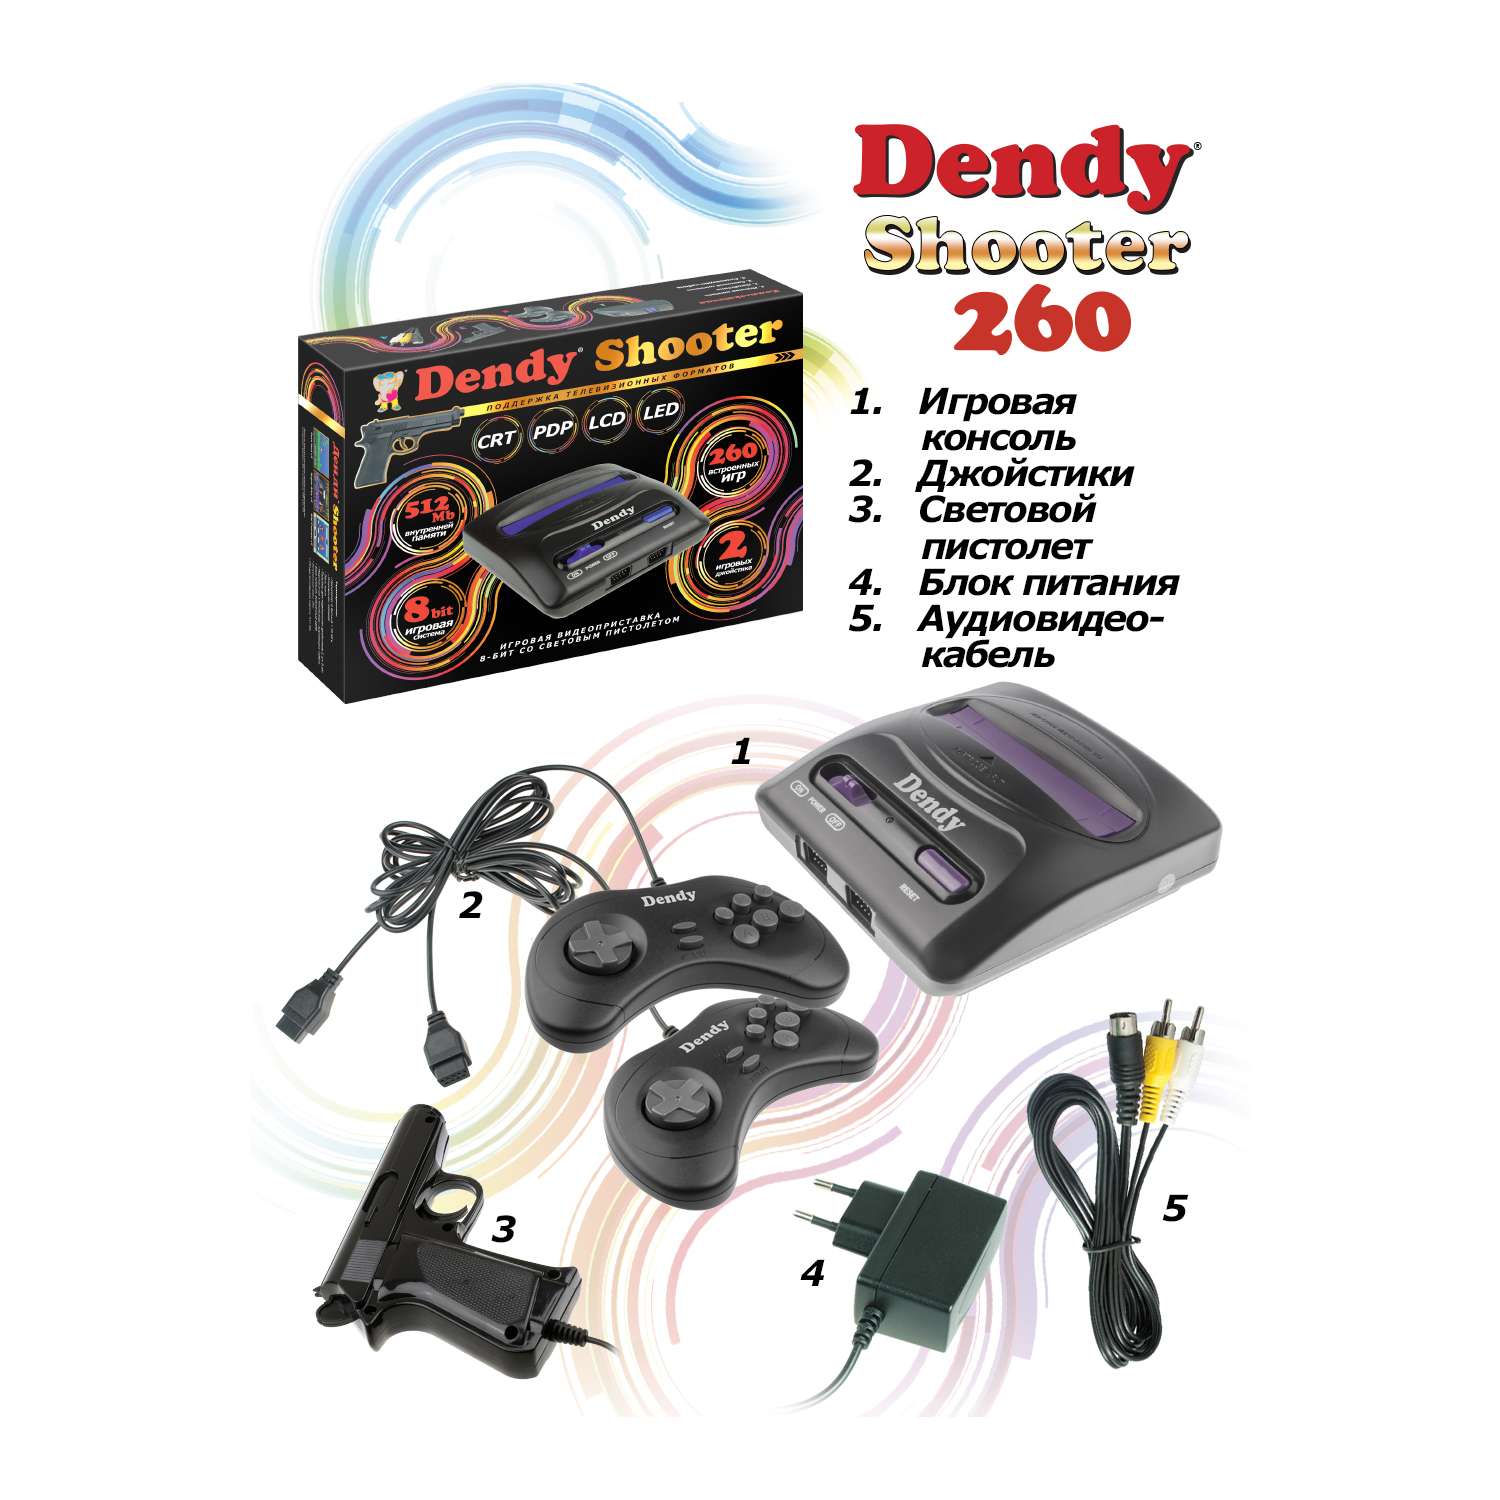 Игровая приставка Dendy Dendy Shooter 260 встроеннах игр + световой пистолет - фото 3